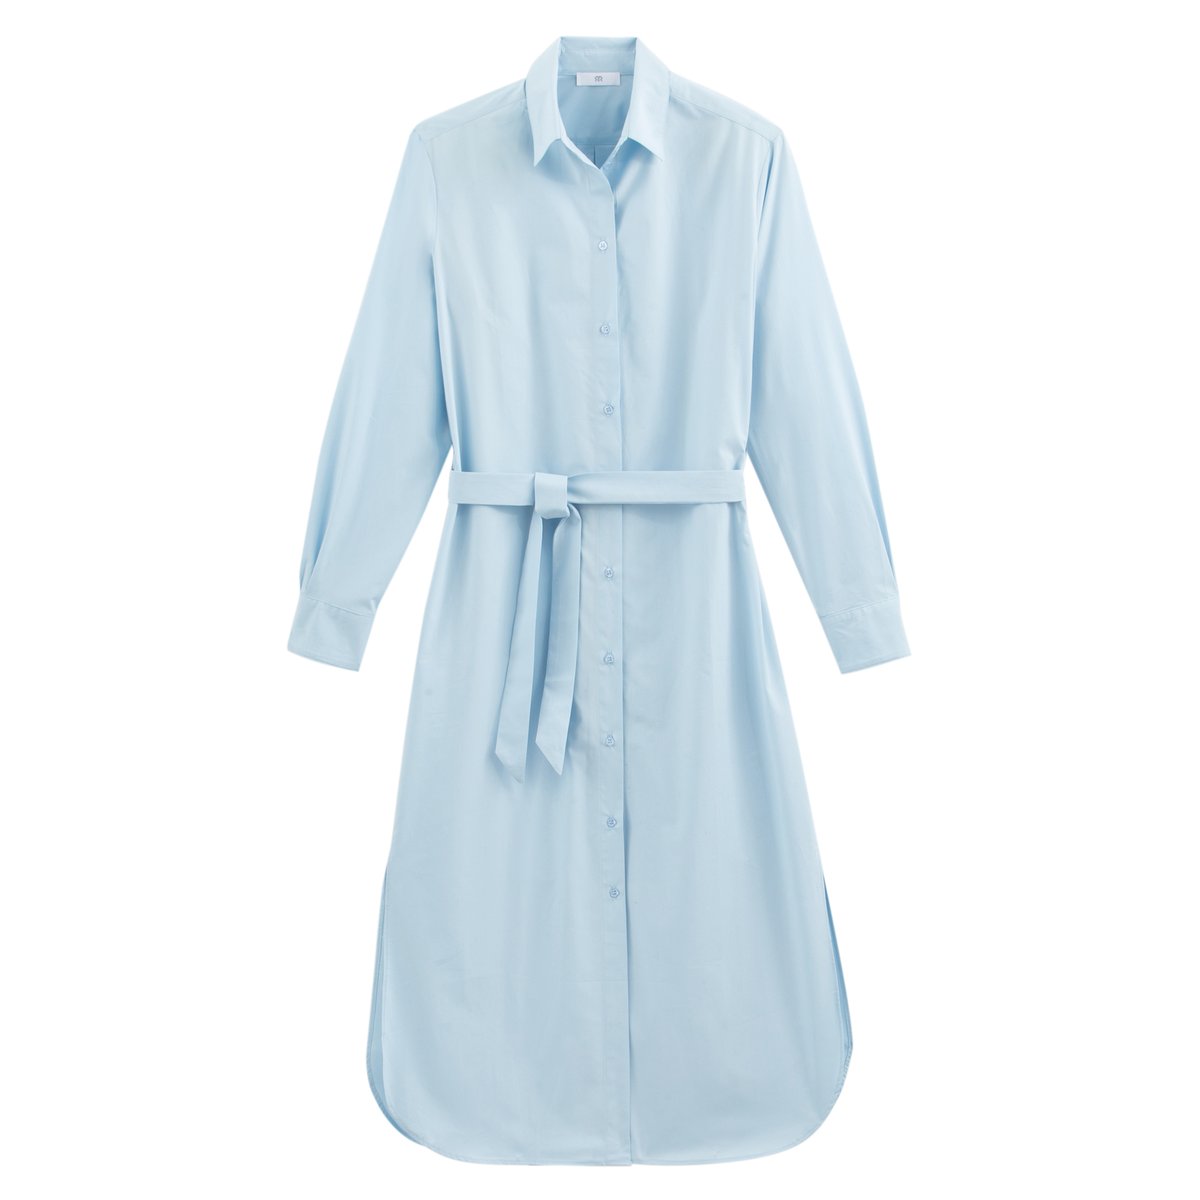 Платье-рубашка La Redoute С длинными рукавами 42 (FR) - 48 (RUS) синий, размер 42 (FR) - 48 (RUS) С длинными рукавами 42 (FR) - 48 (RUS) синий - фото 5